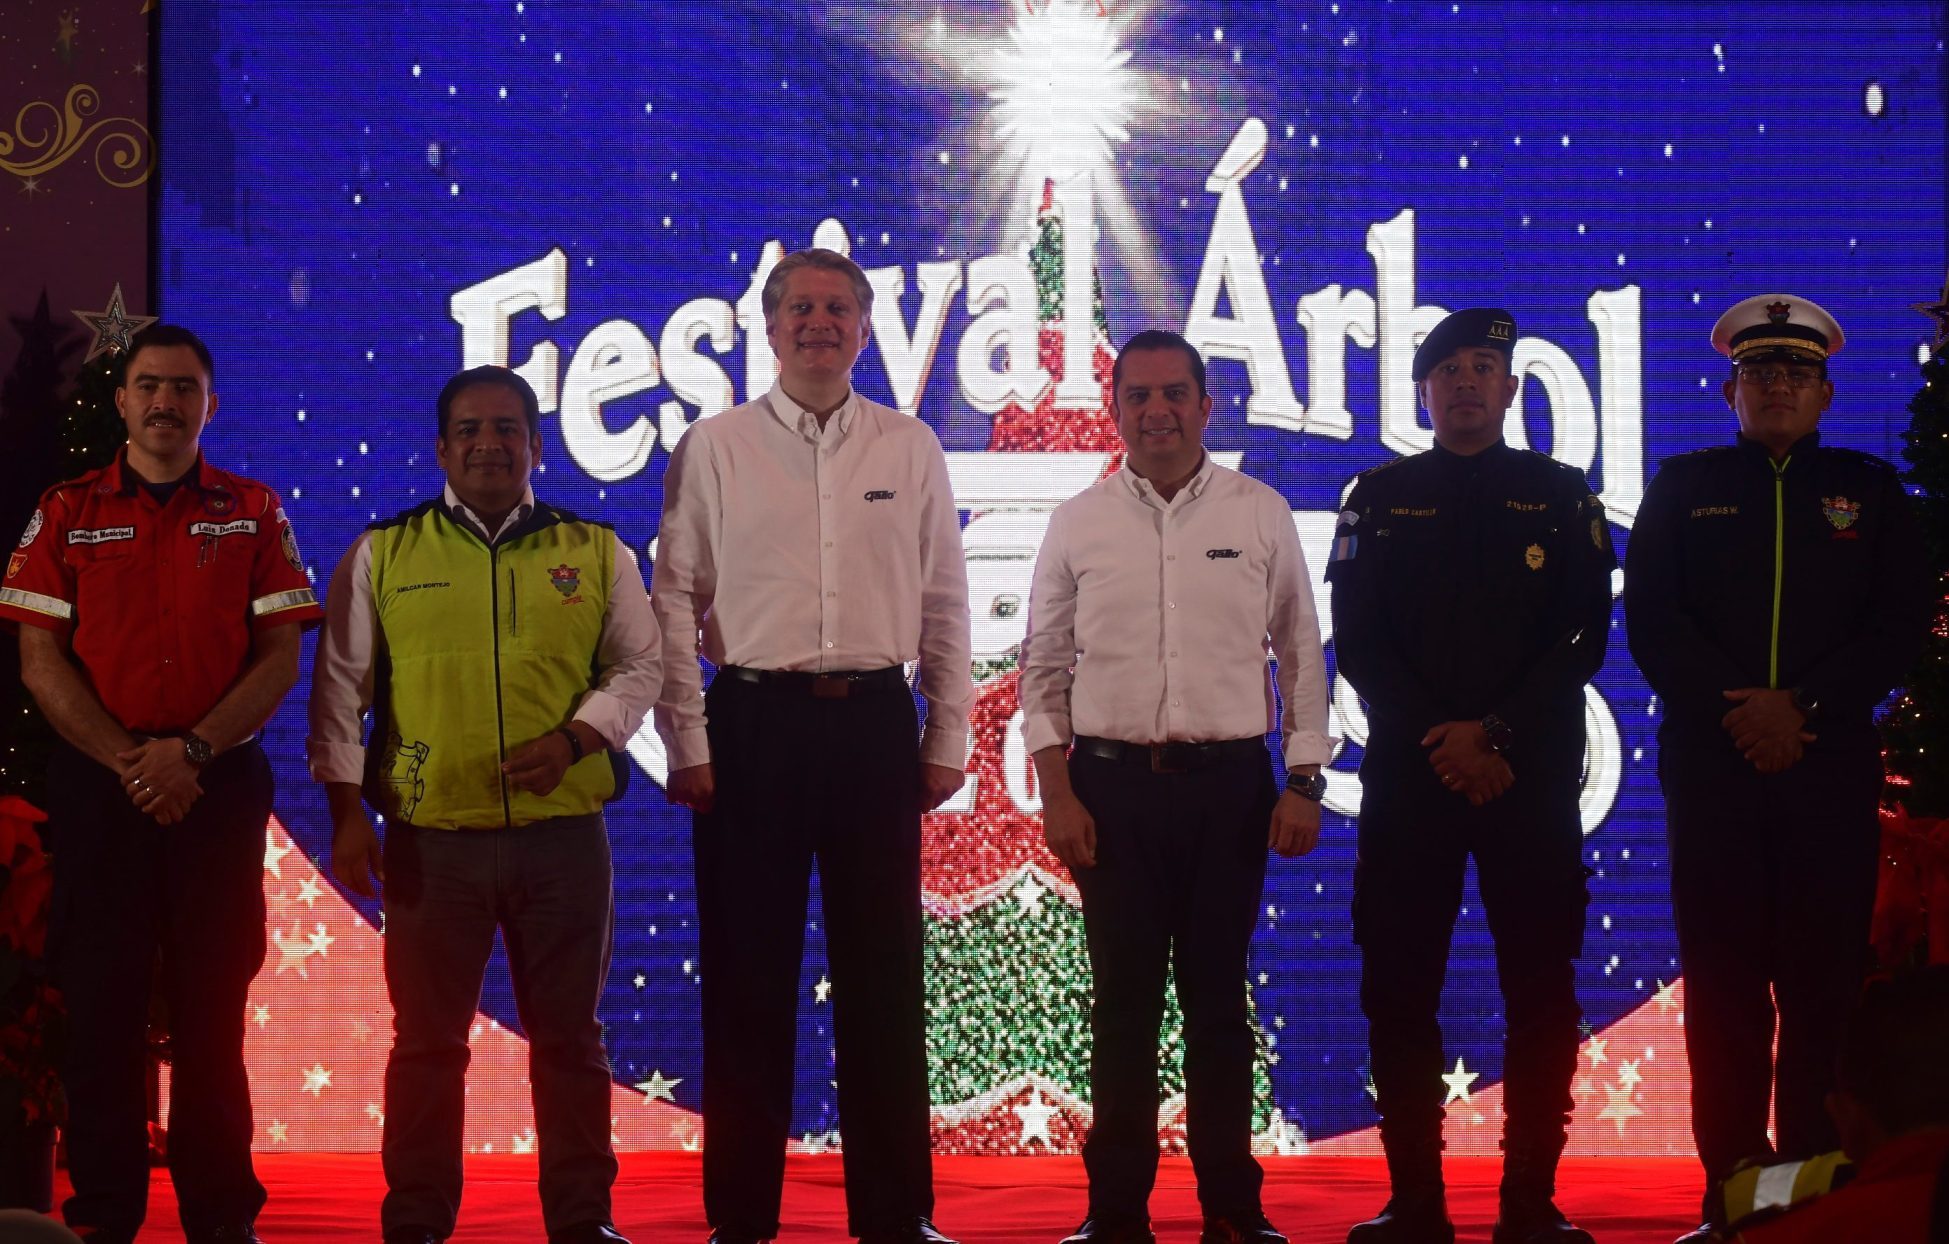 El Festival Árbol Gallo, anuncia el inicio de las fiestas de fin de año en Guatemala